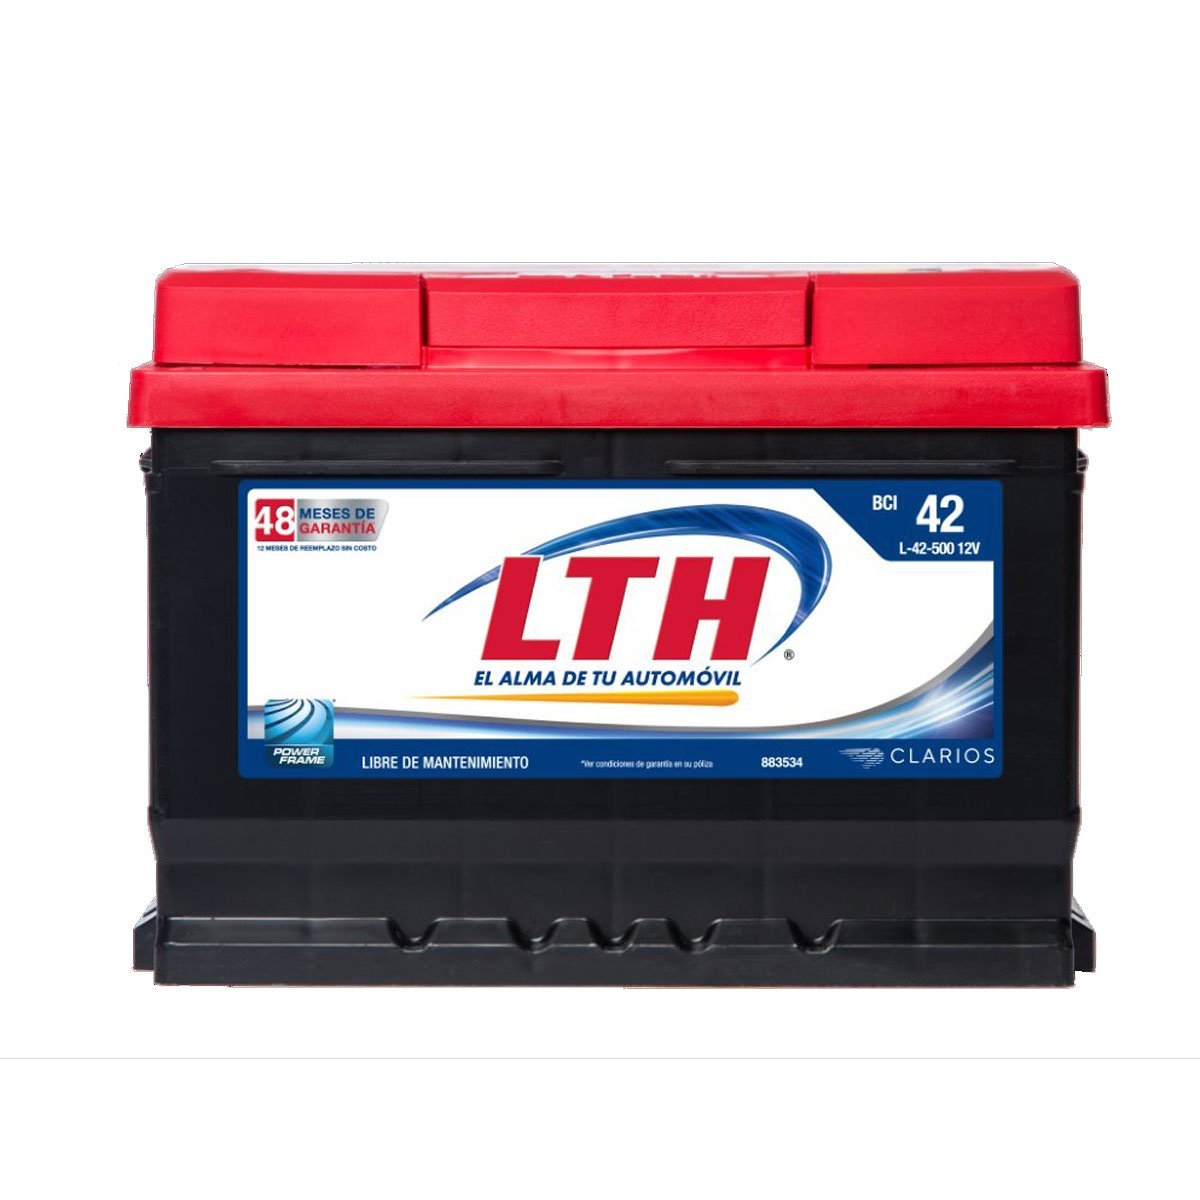 Acumulador Lth Mod. L42-500